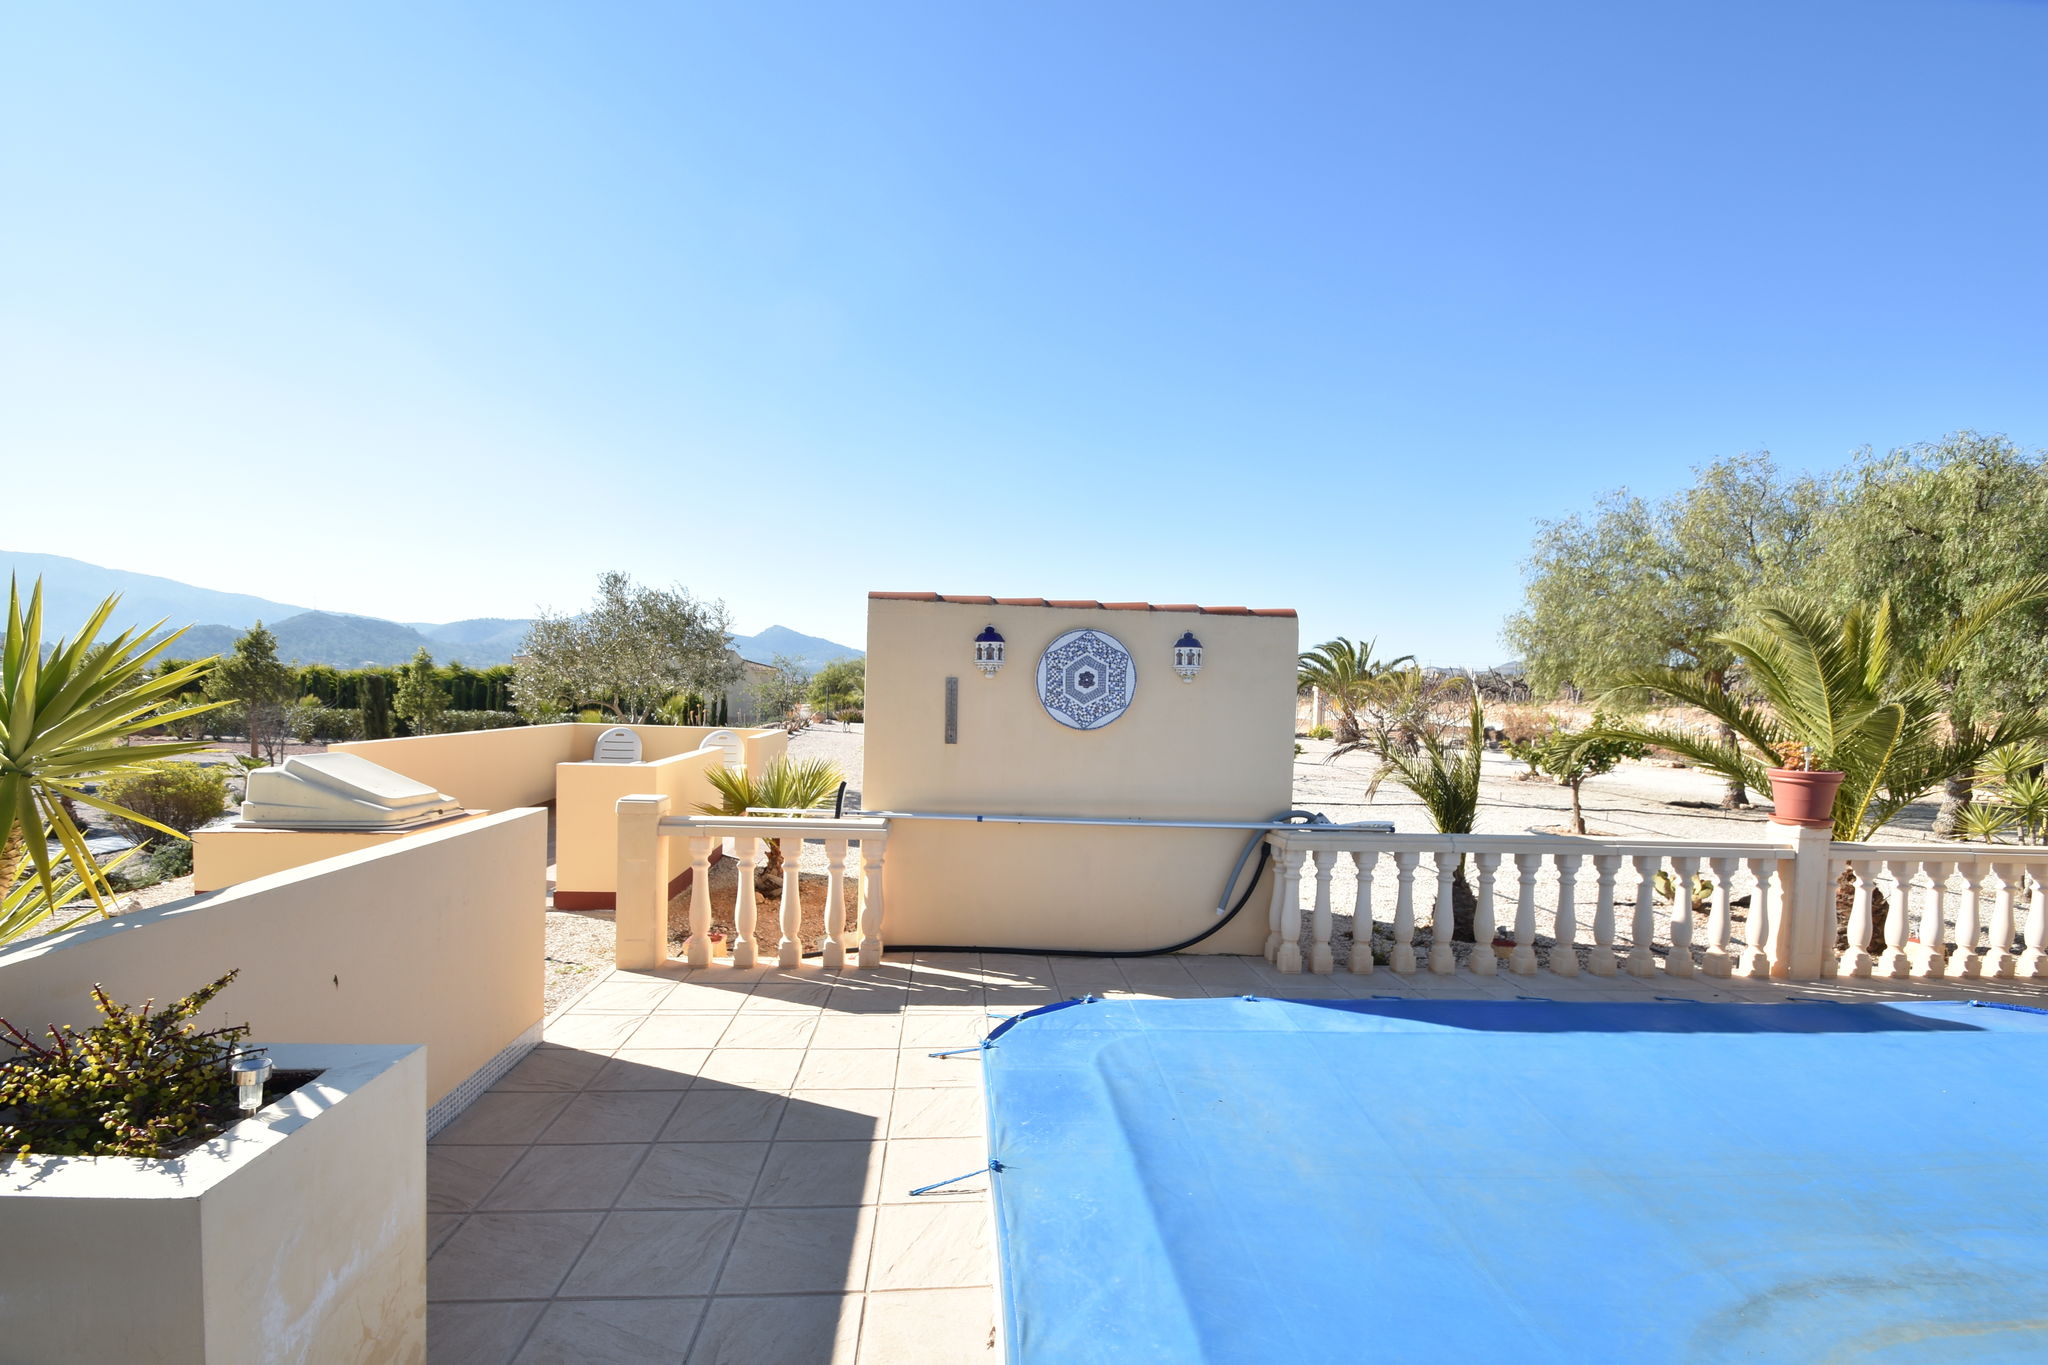 Maison de vacances confortable avec piscine à Valence